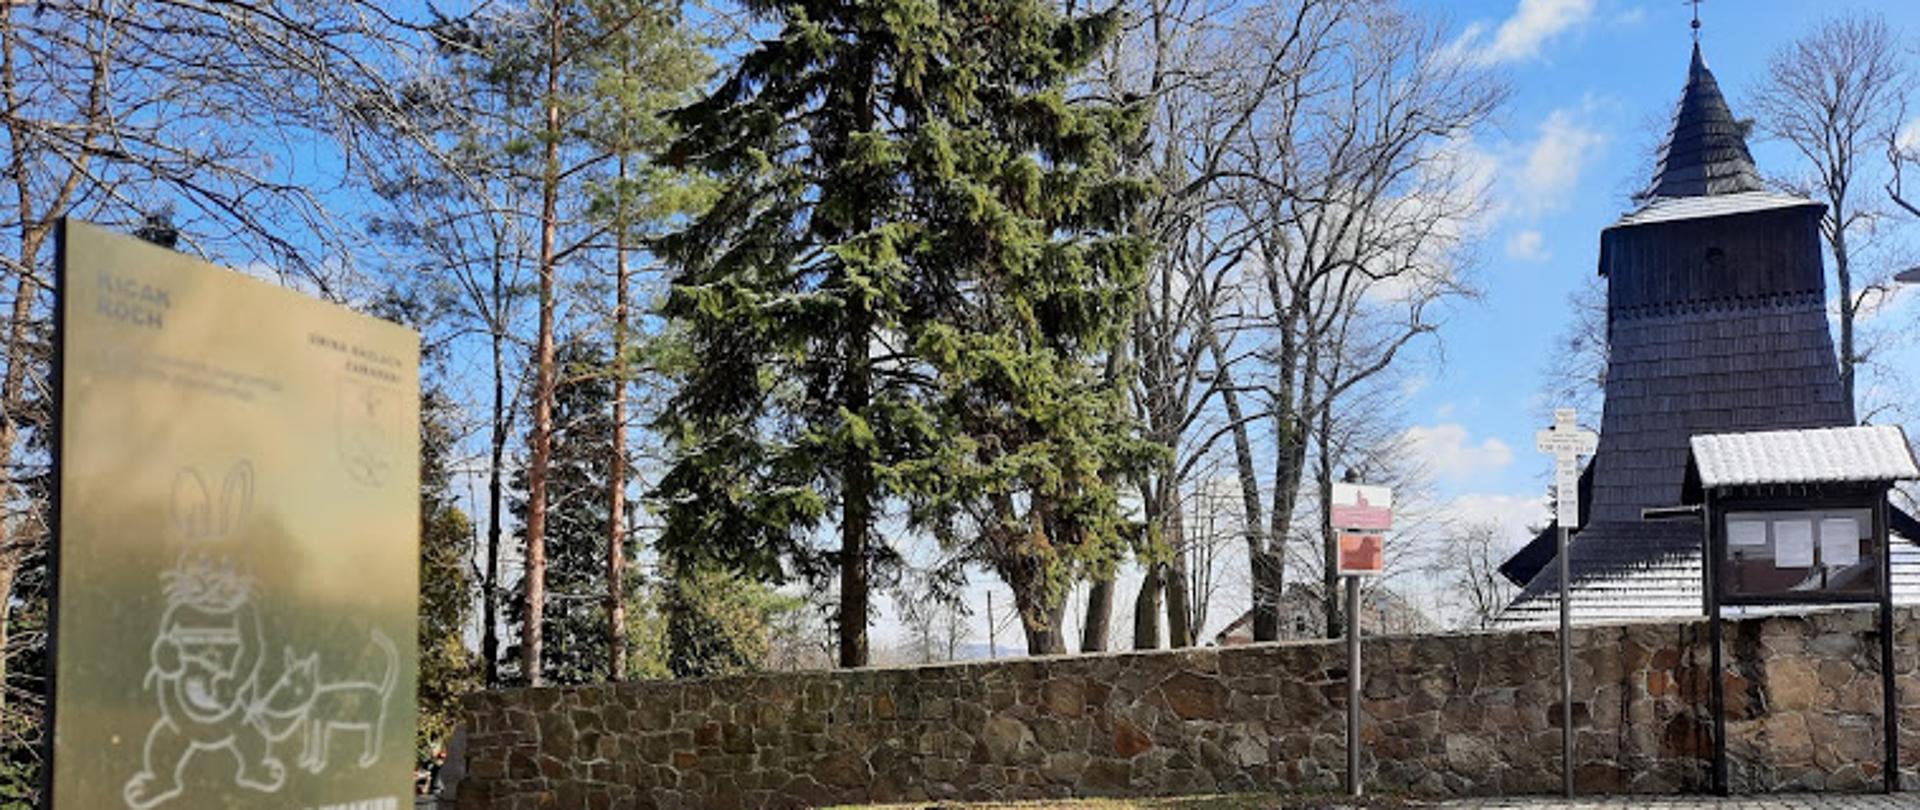 Na pierwszym planie słupek z tabliczką z Kicakiem. Na drugim planie zabytkowy kościół drewniany w Zamarskach